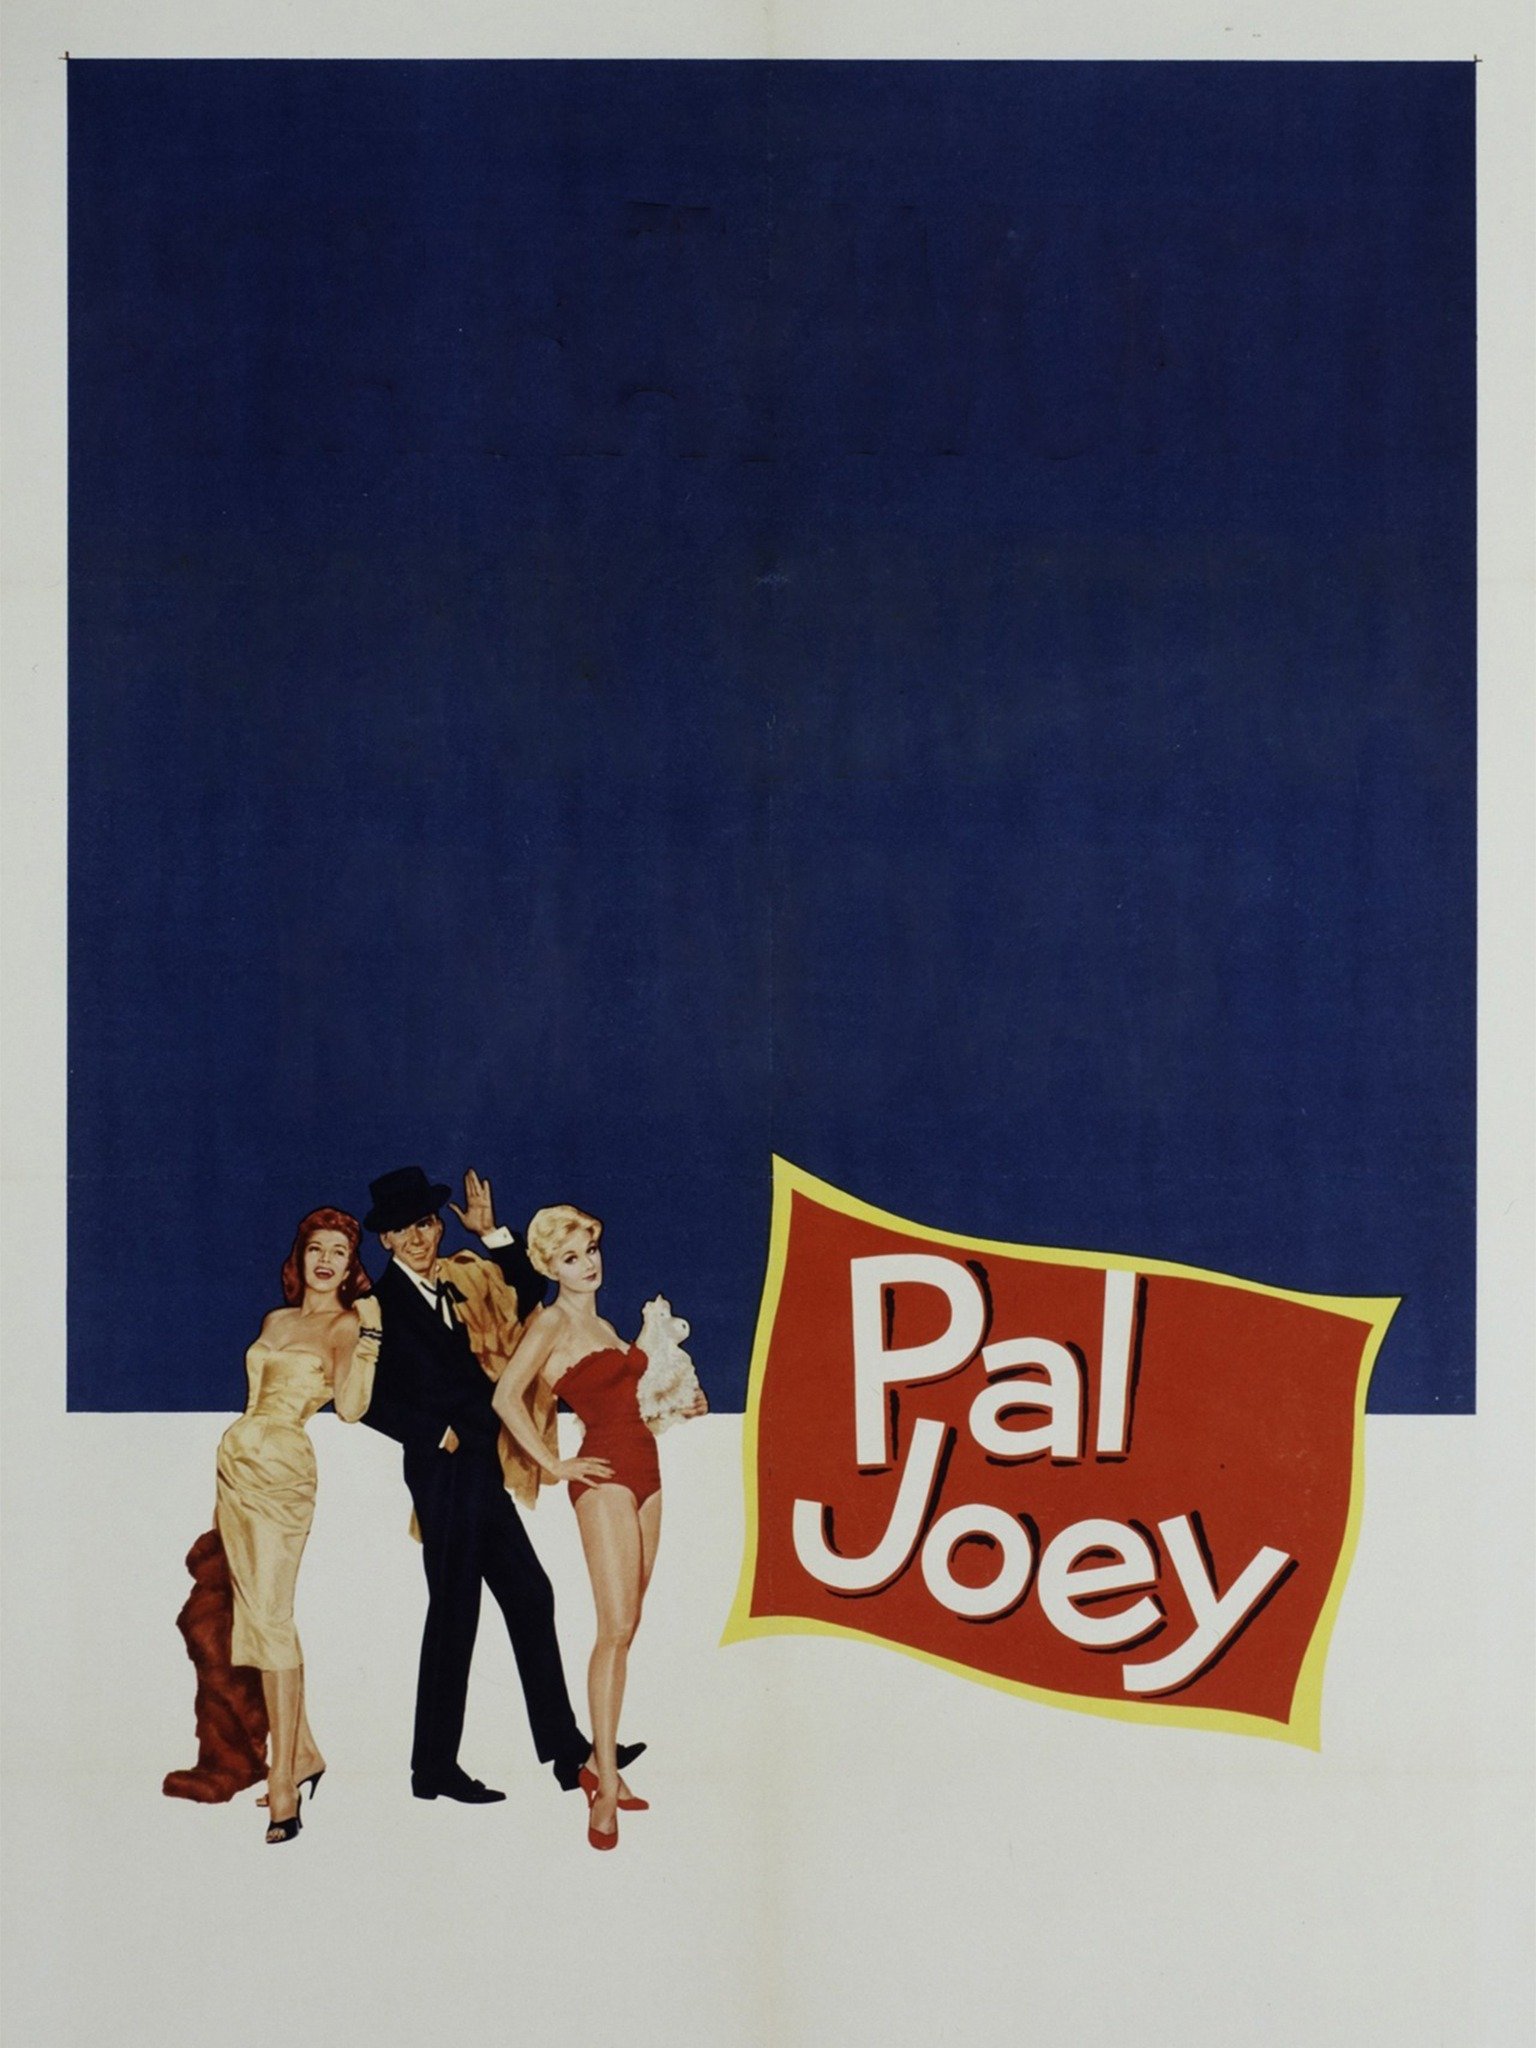 Pal Joey Movie Reviews